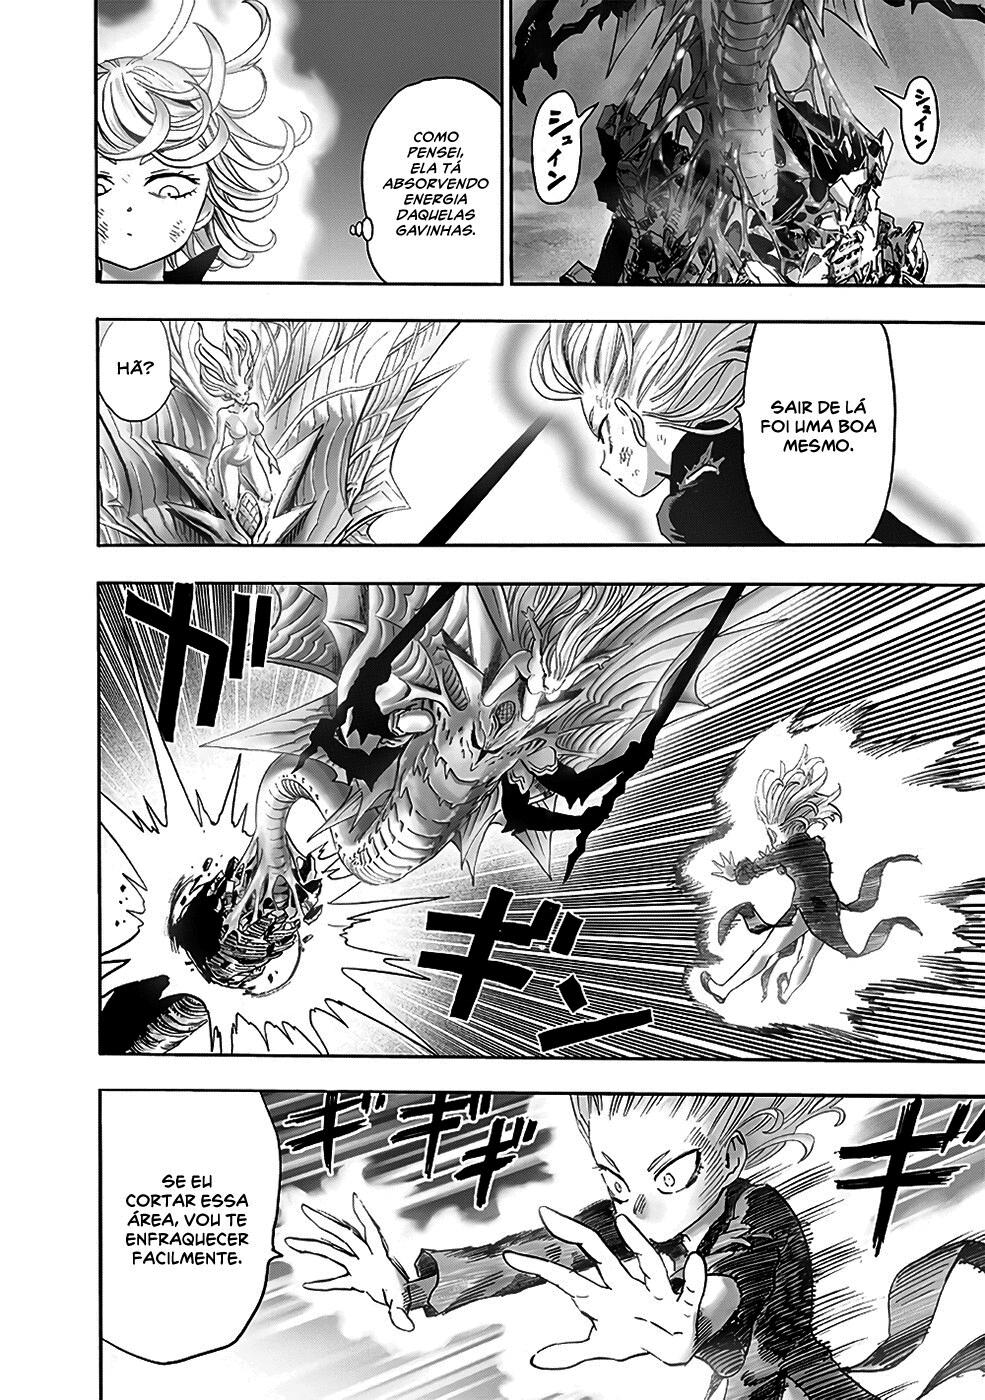 Quem no universo de Naruto seria capaz de derrotar Tatsumaki? - Página 5 510